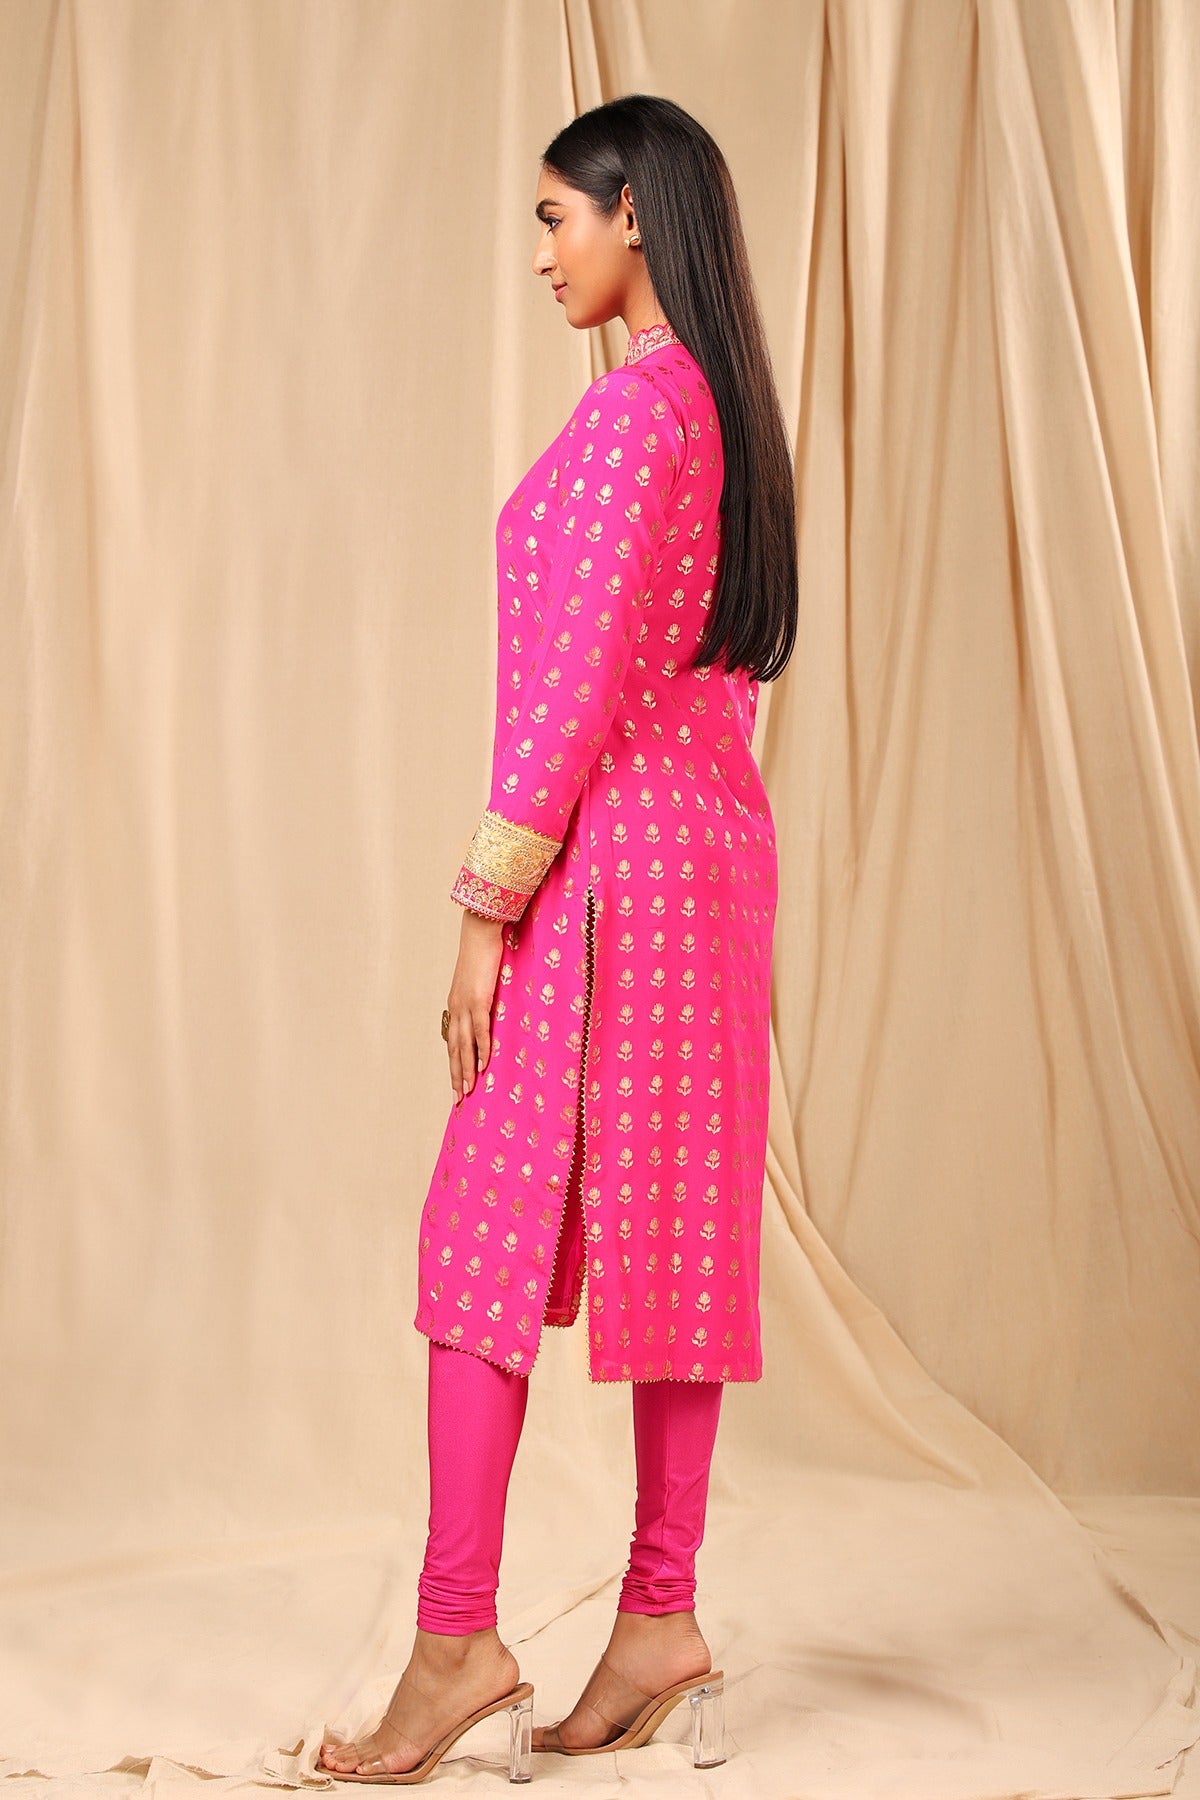 Buy Online Pink Rayaon Straight Kurta for Women & Girls at Best Prices in  Biba India-COREKUR15454SS